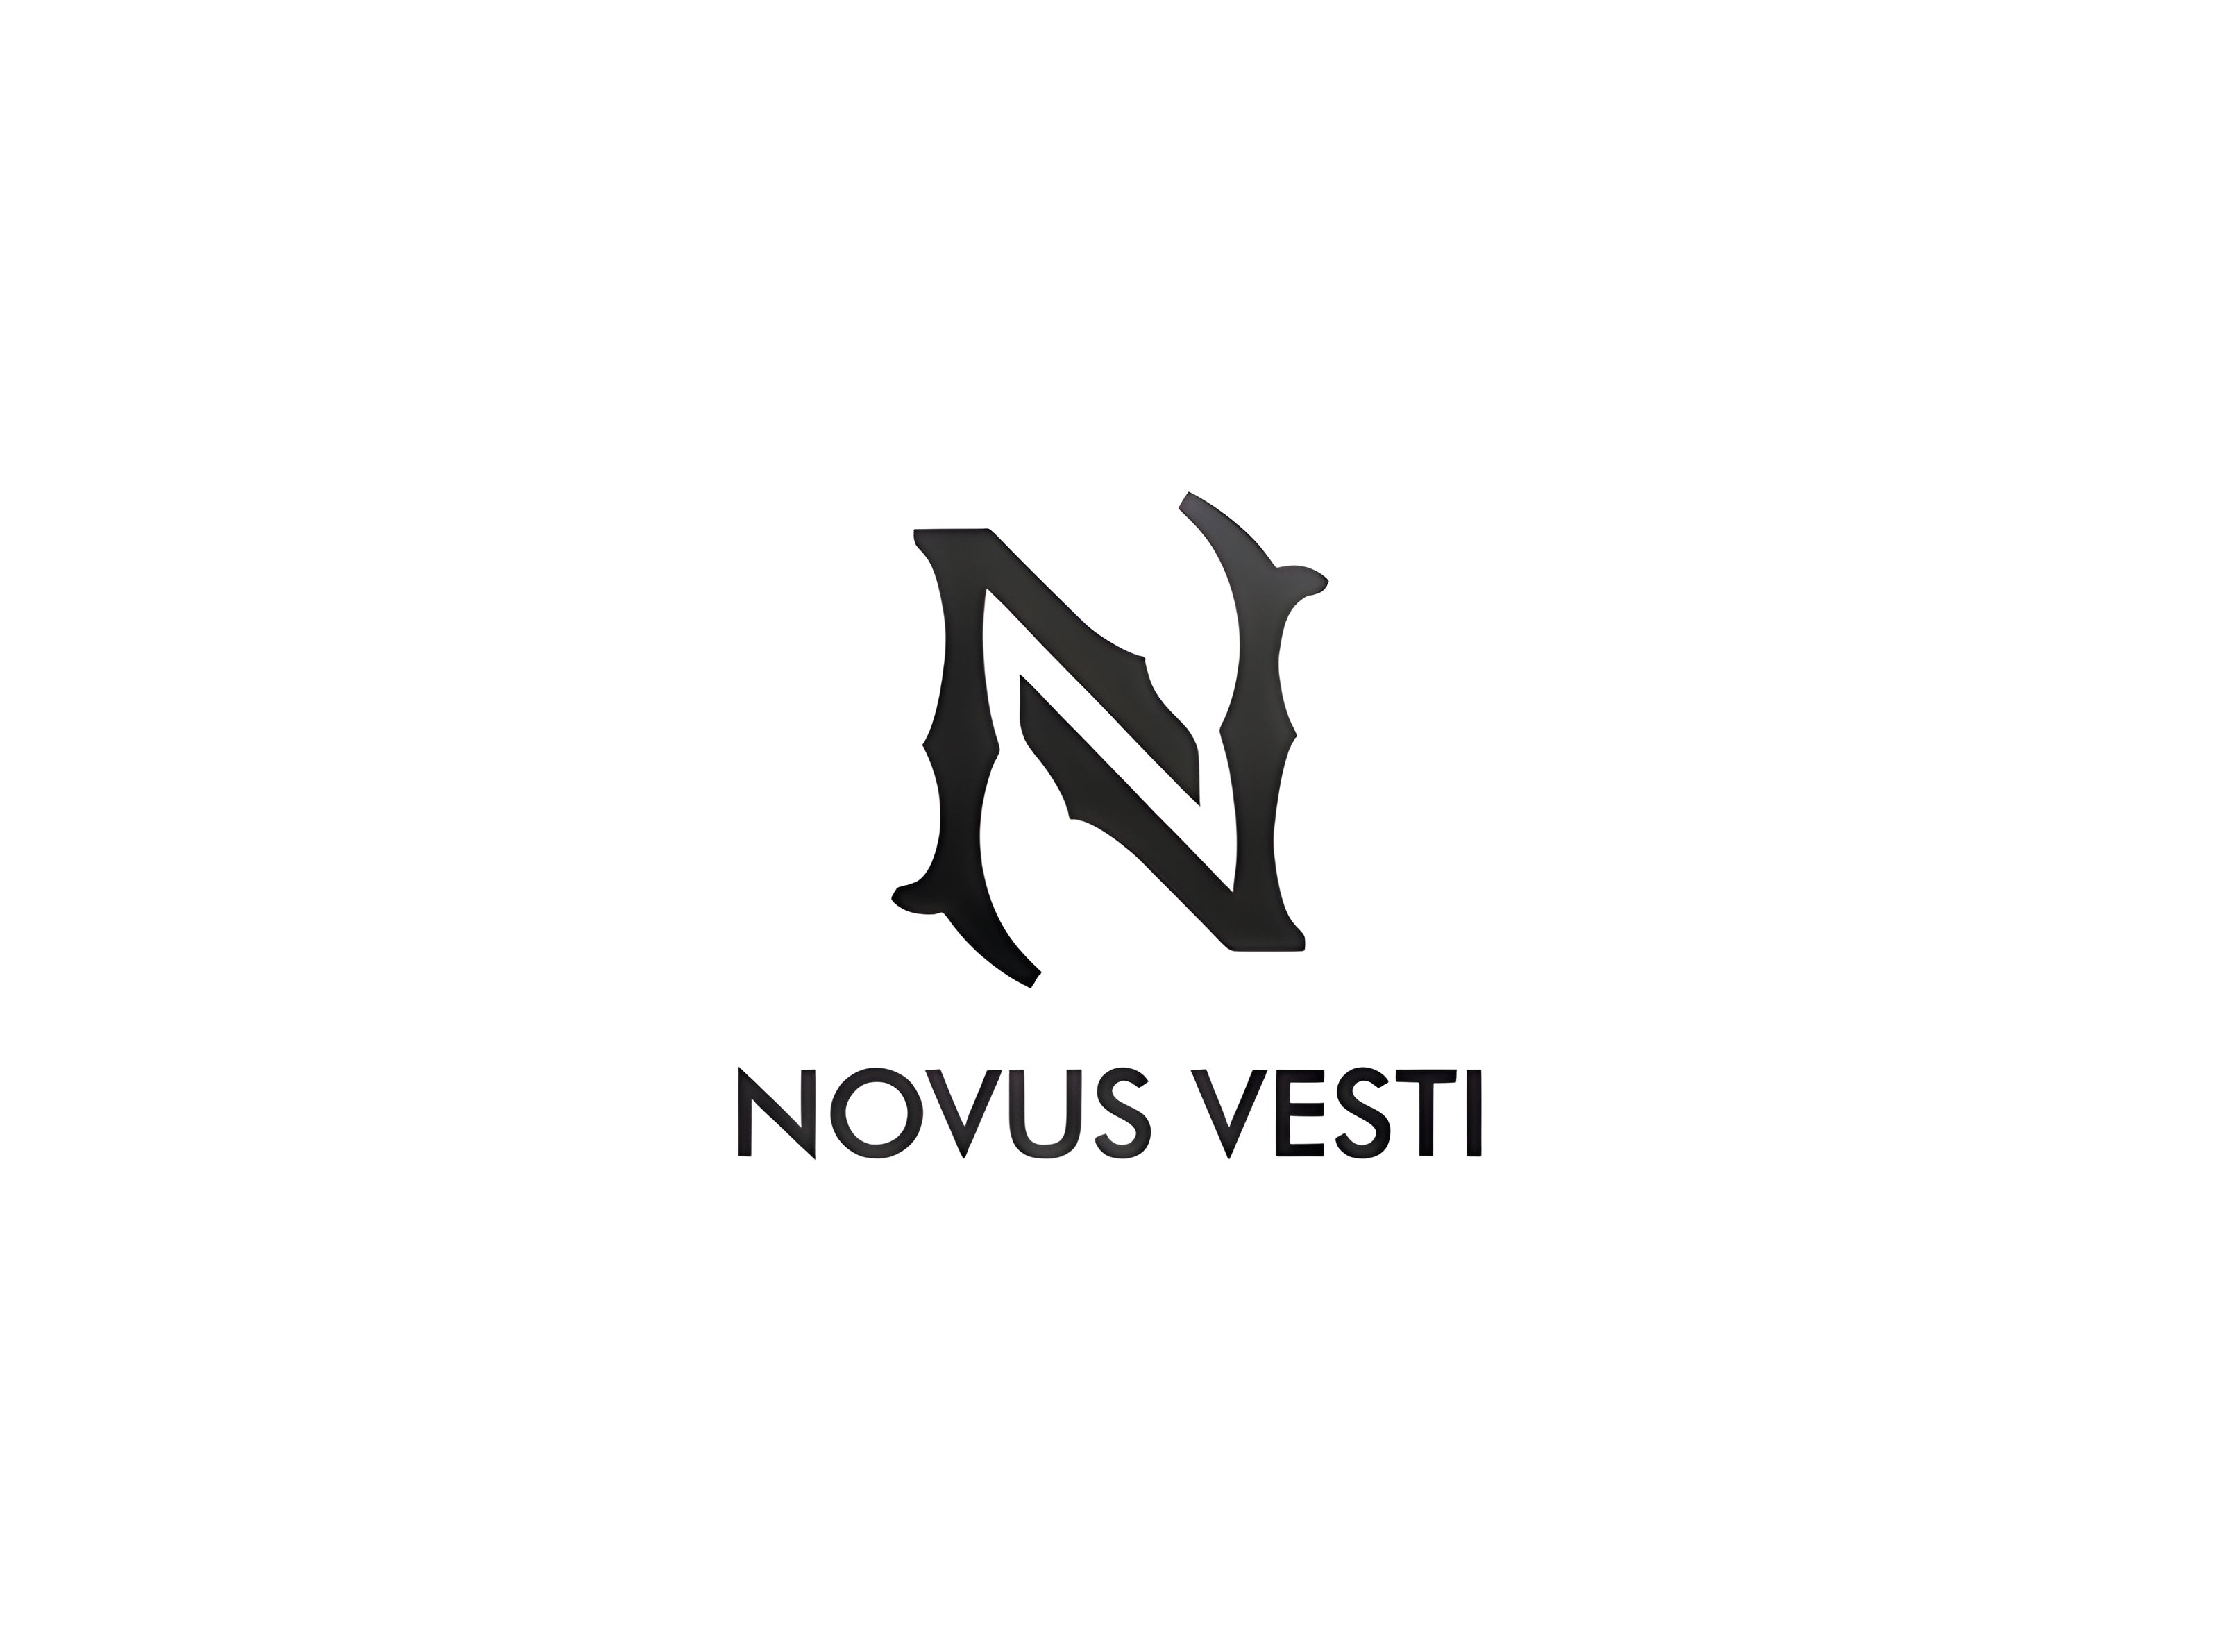 Novus Vesti